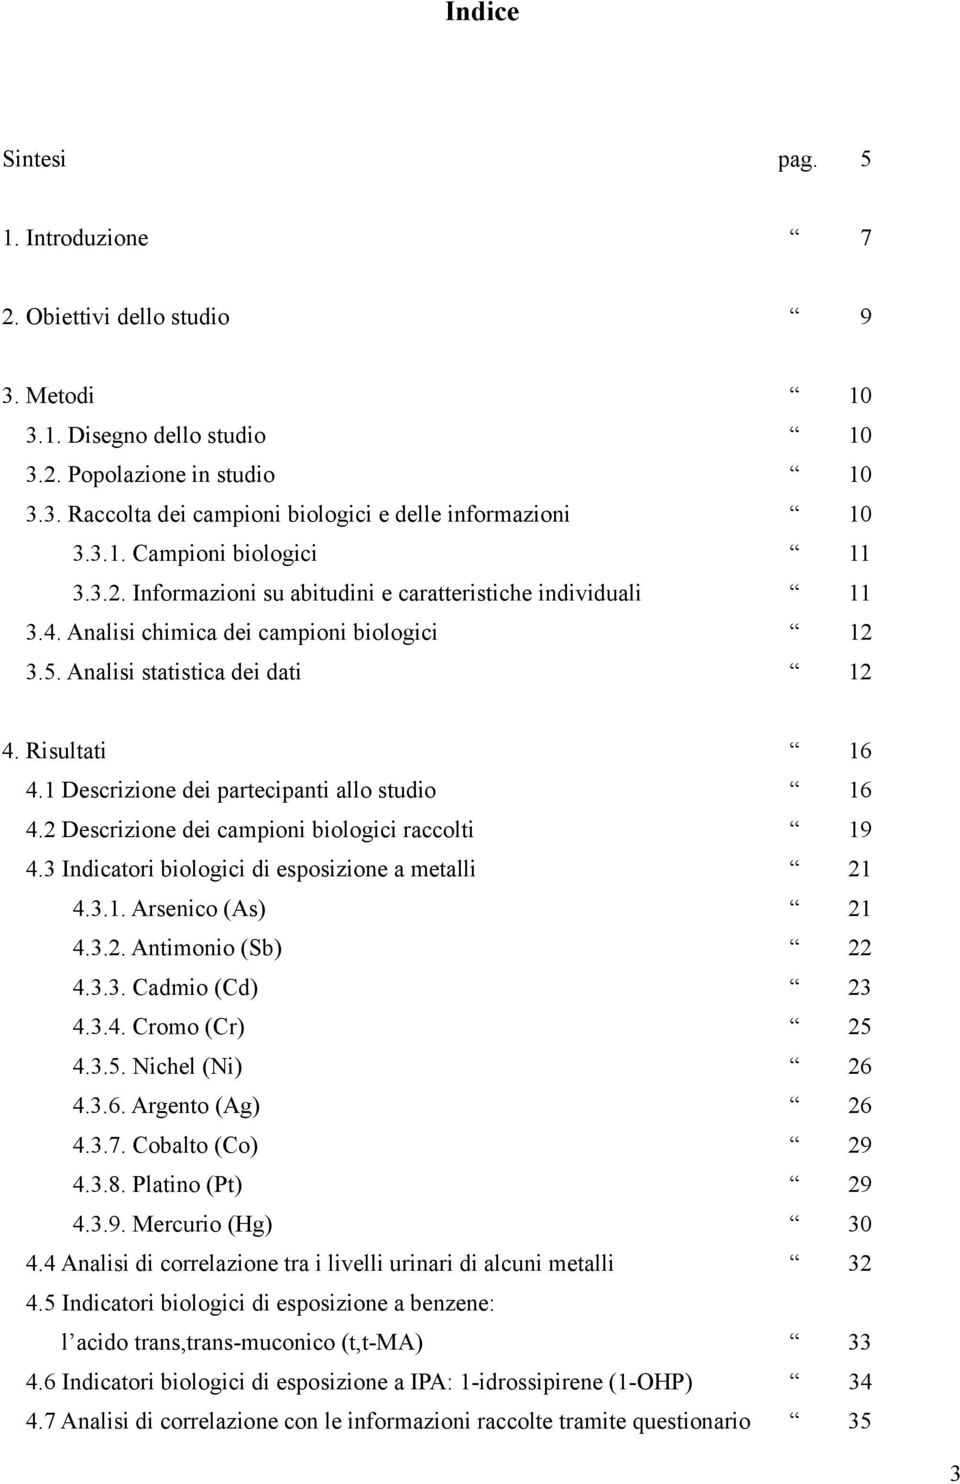 1 Descrizione dei partecipanti allo studio 16 4.2 Descrizione dei campioni biologici raccolti 19 4.3 Indicatori biologici di esposizione a metalli 21 4.3.1. Arsenico (As) 21 4.3.2. Antimonio (Sb) 22 4.